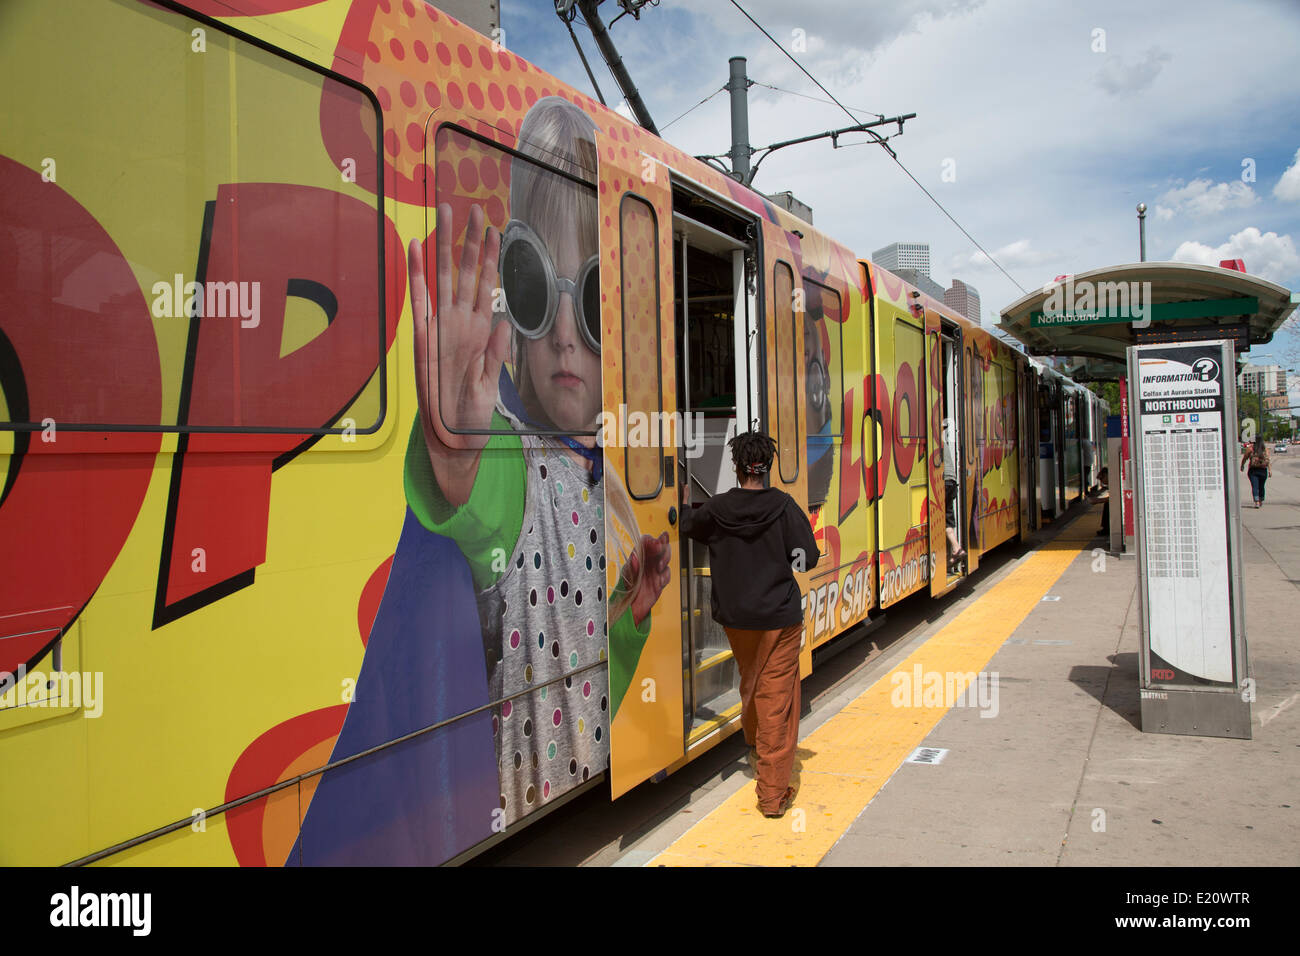 Denver, Colorado - El rápido tránsito de trenes en una estación cerca de Denver. Foto de stock